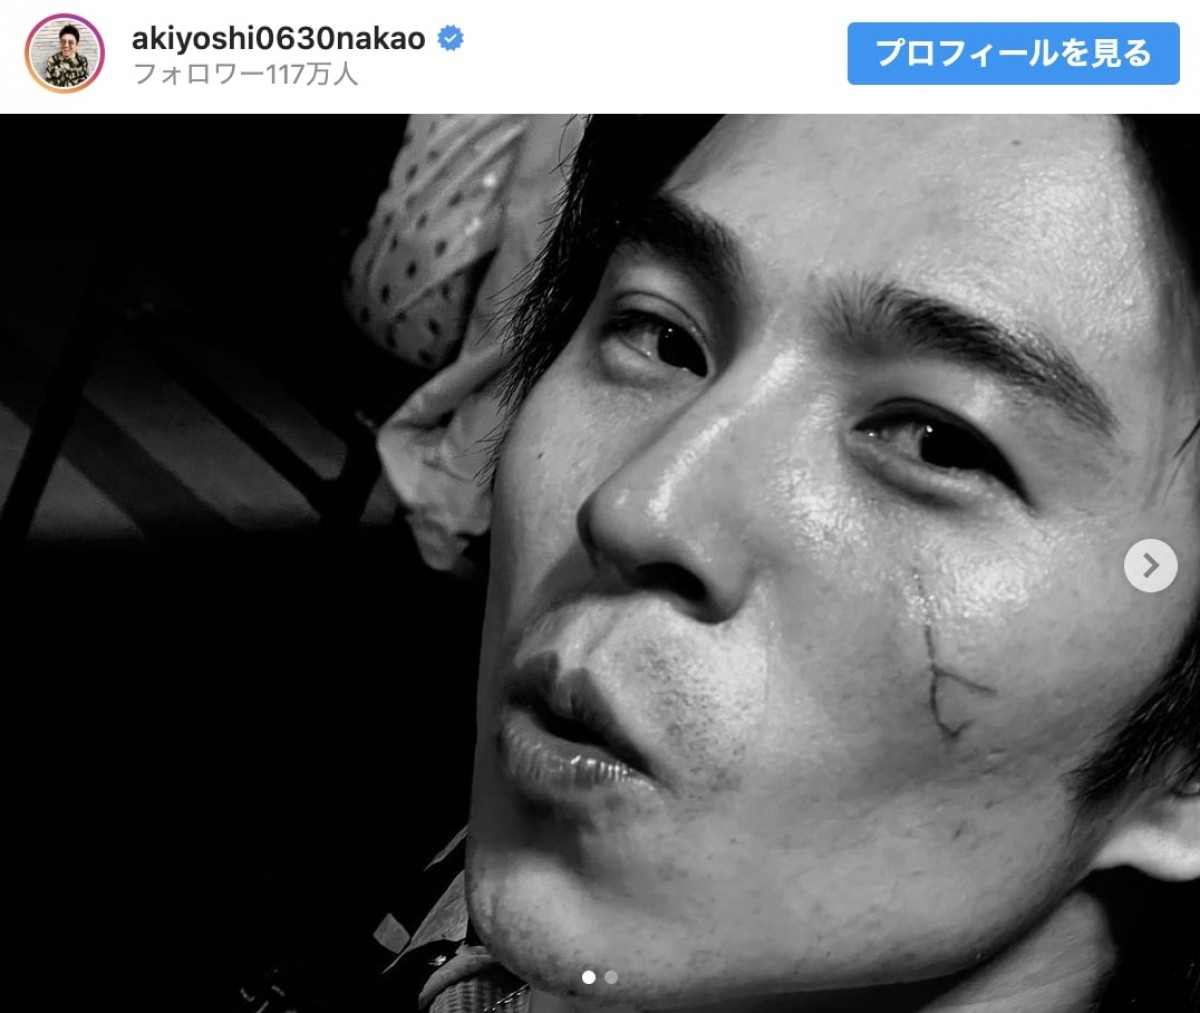 中尾明慶、竹内涼真撮影のドアップショット　「輪郭はブラピで横顔はトムクルーズです」